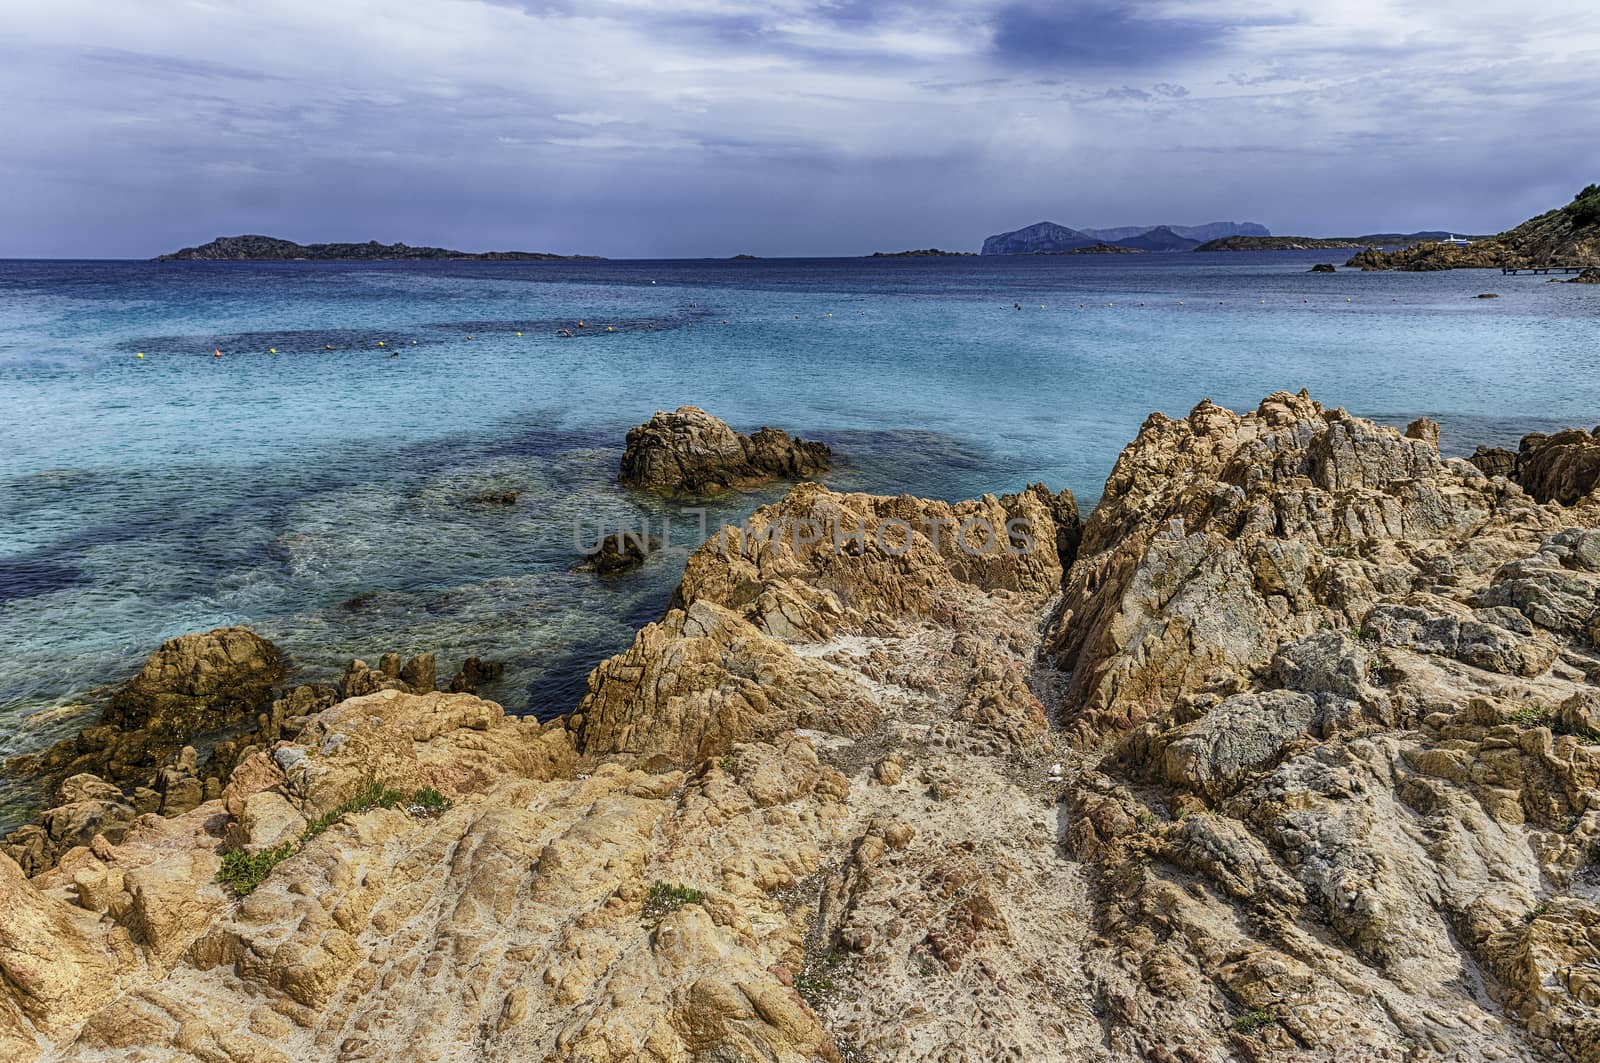 View over the scenic Spiaggia del Principe, Sardinia, Italy by marcorubino